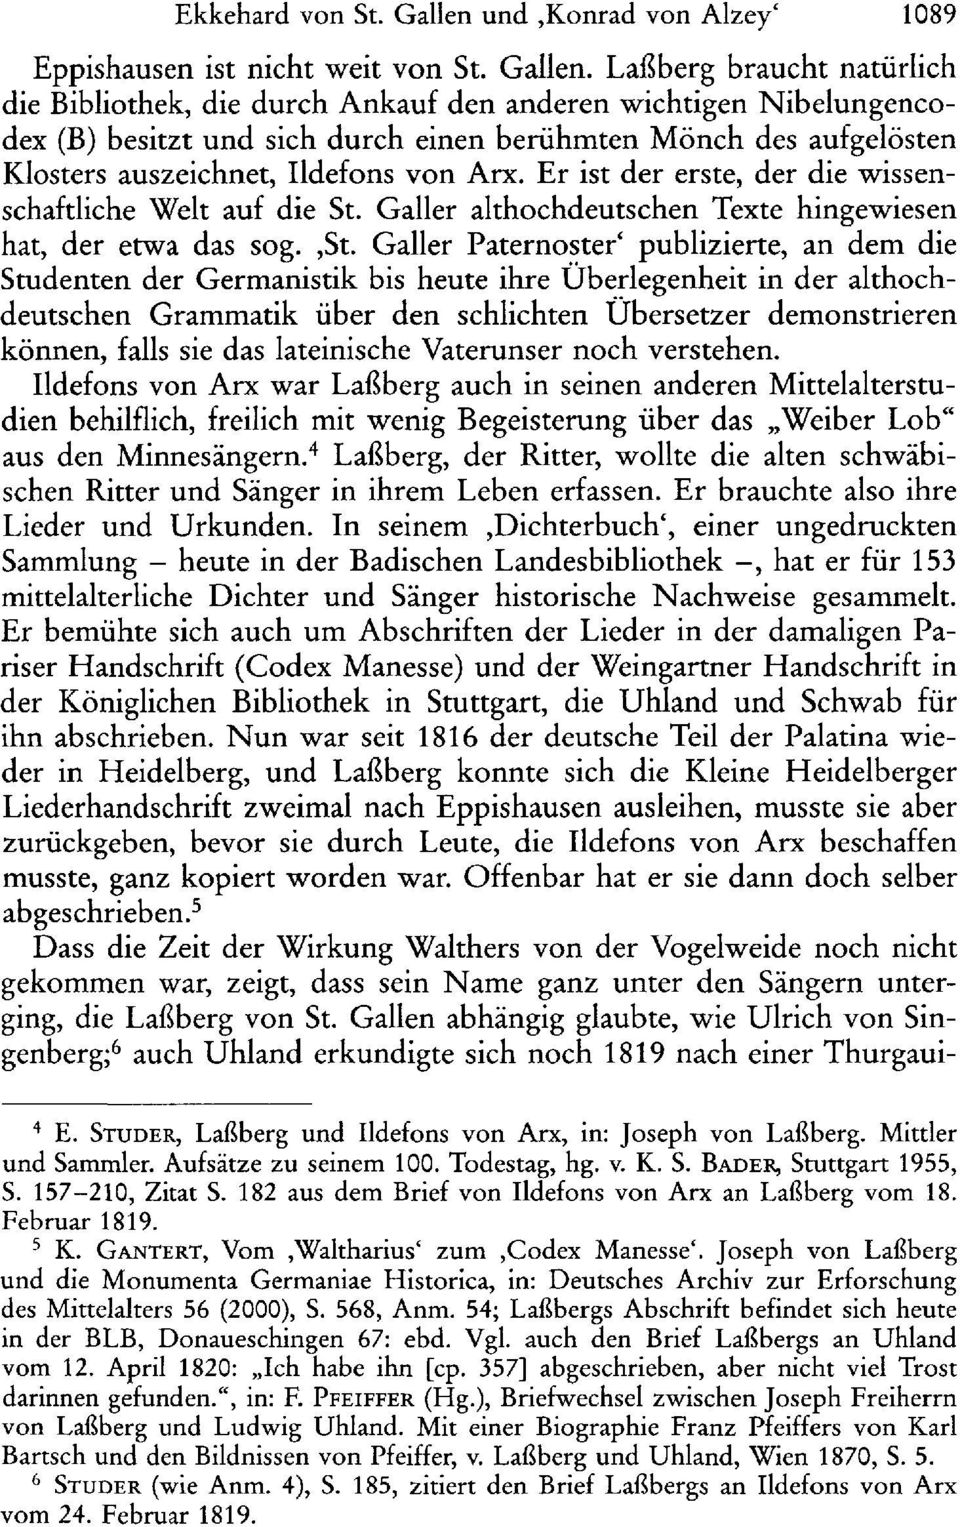 Laßberg braucht natürlich die Bibliothek, die durch Ankauf den anderen wichtigen Nibelungencodex (B) besitzt und sich durch einen berühmten Mönch des aufgelösten Klosters auszeichnet, Ildefons von